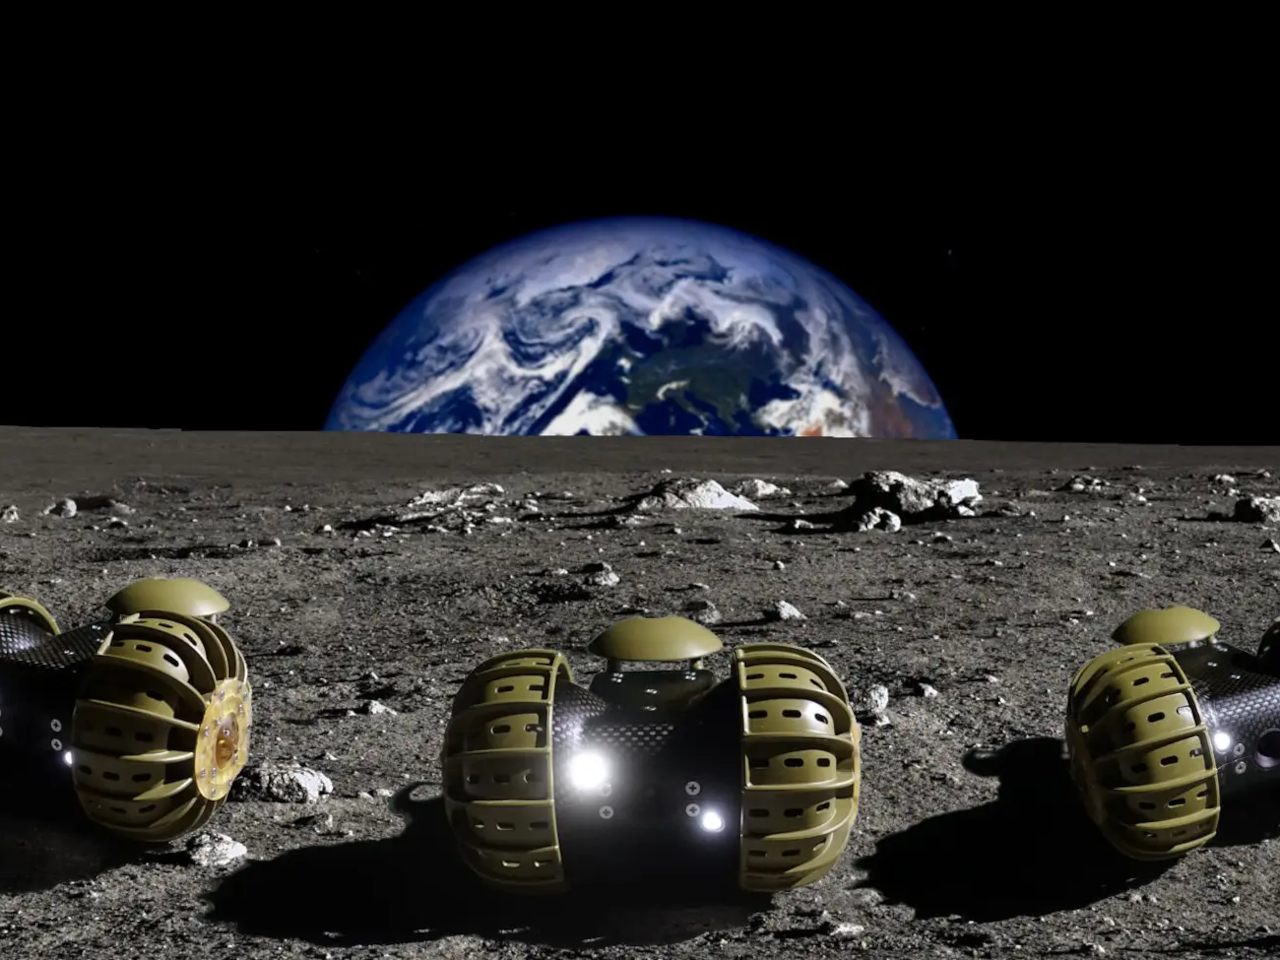 月面探査車「YAOKI」のダイモン、プレシリーズAラウンドで1億4000万円を調達